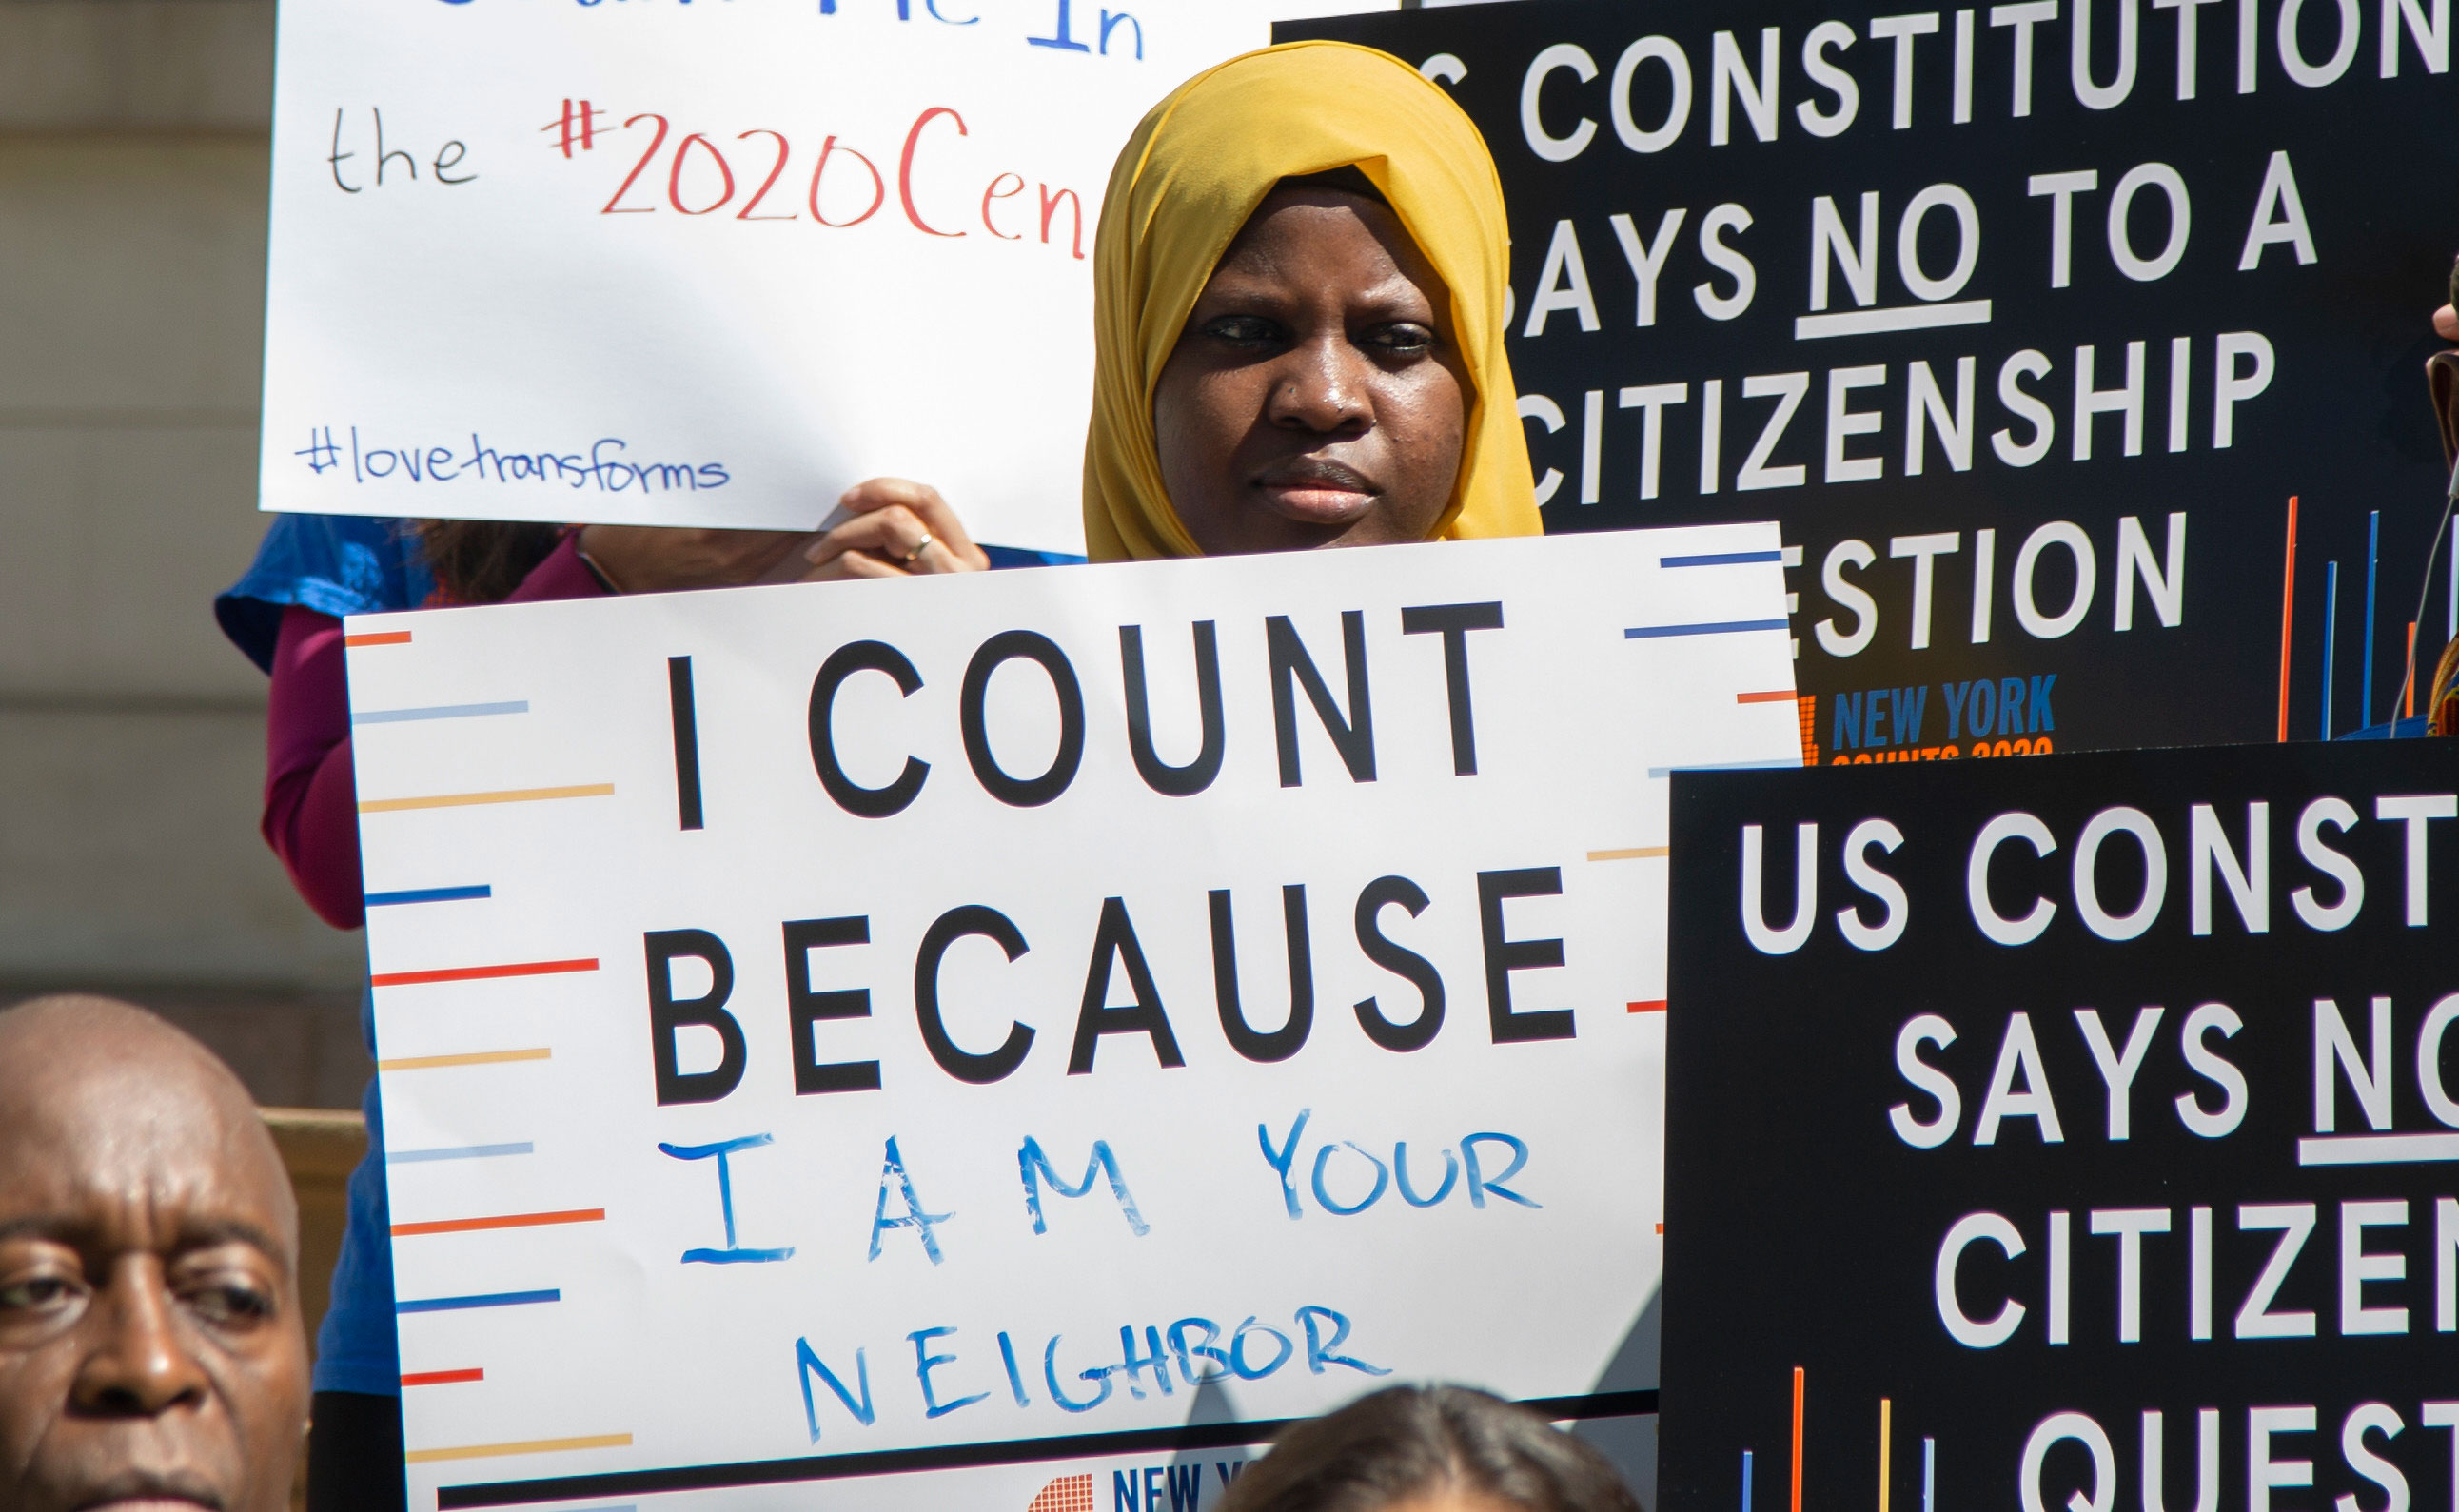 L'image montre un jeune lors d'une conférence de presse du Conseil de la ville de New York tenant une pancarte indiquant «Je compte parce que je suis ton voisin».